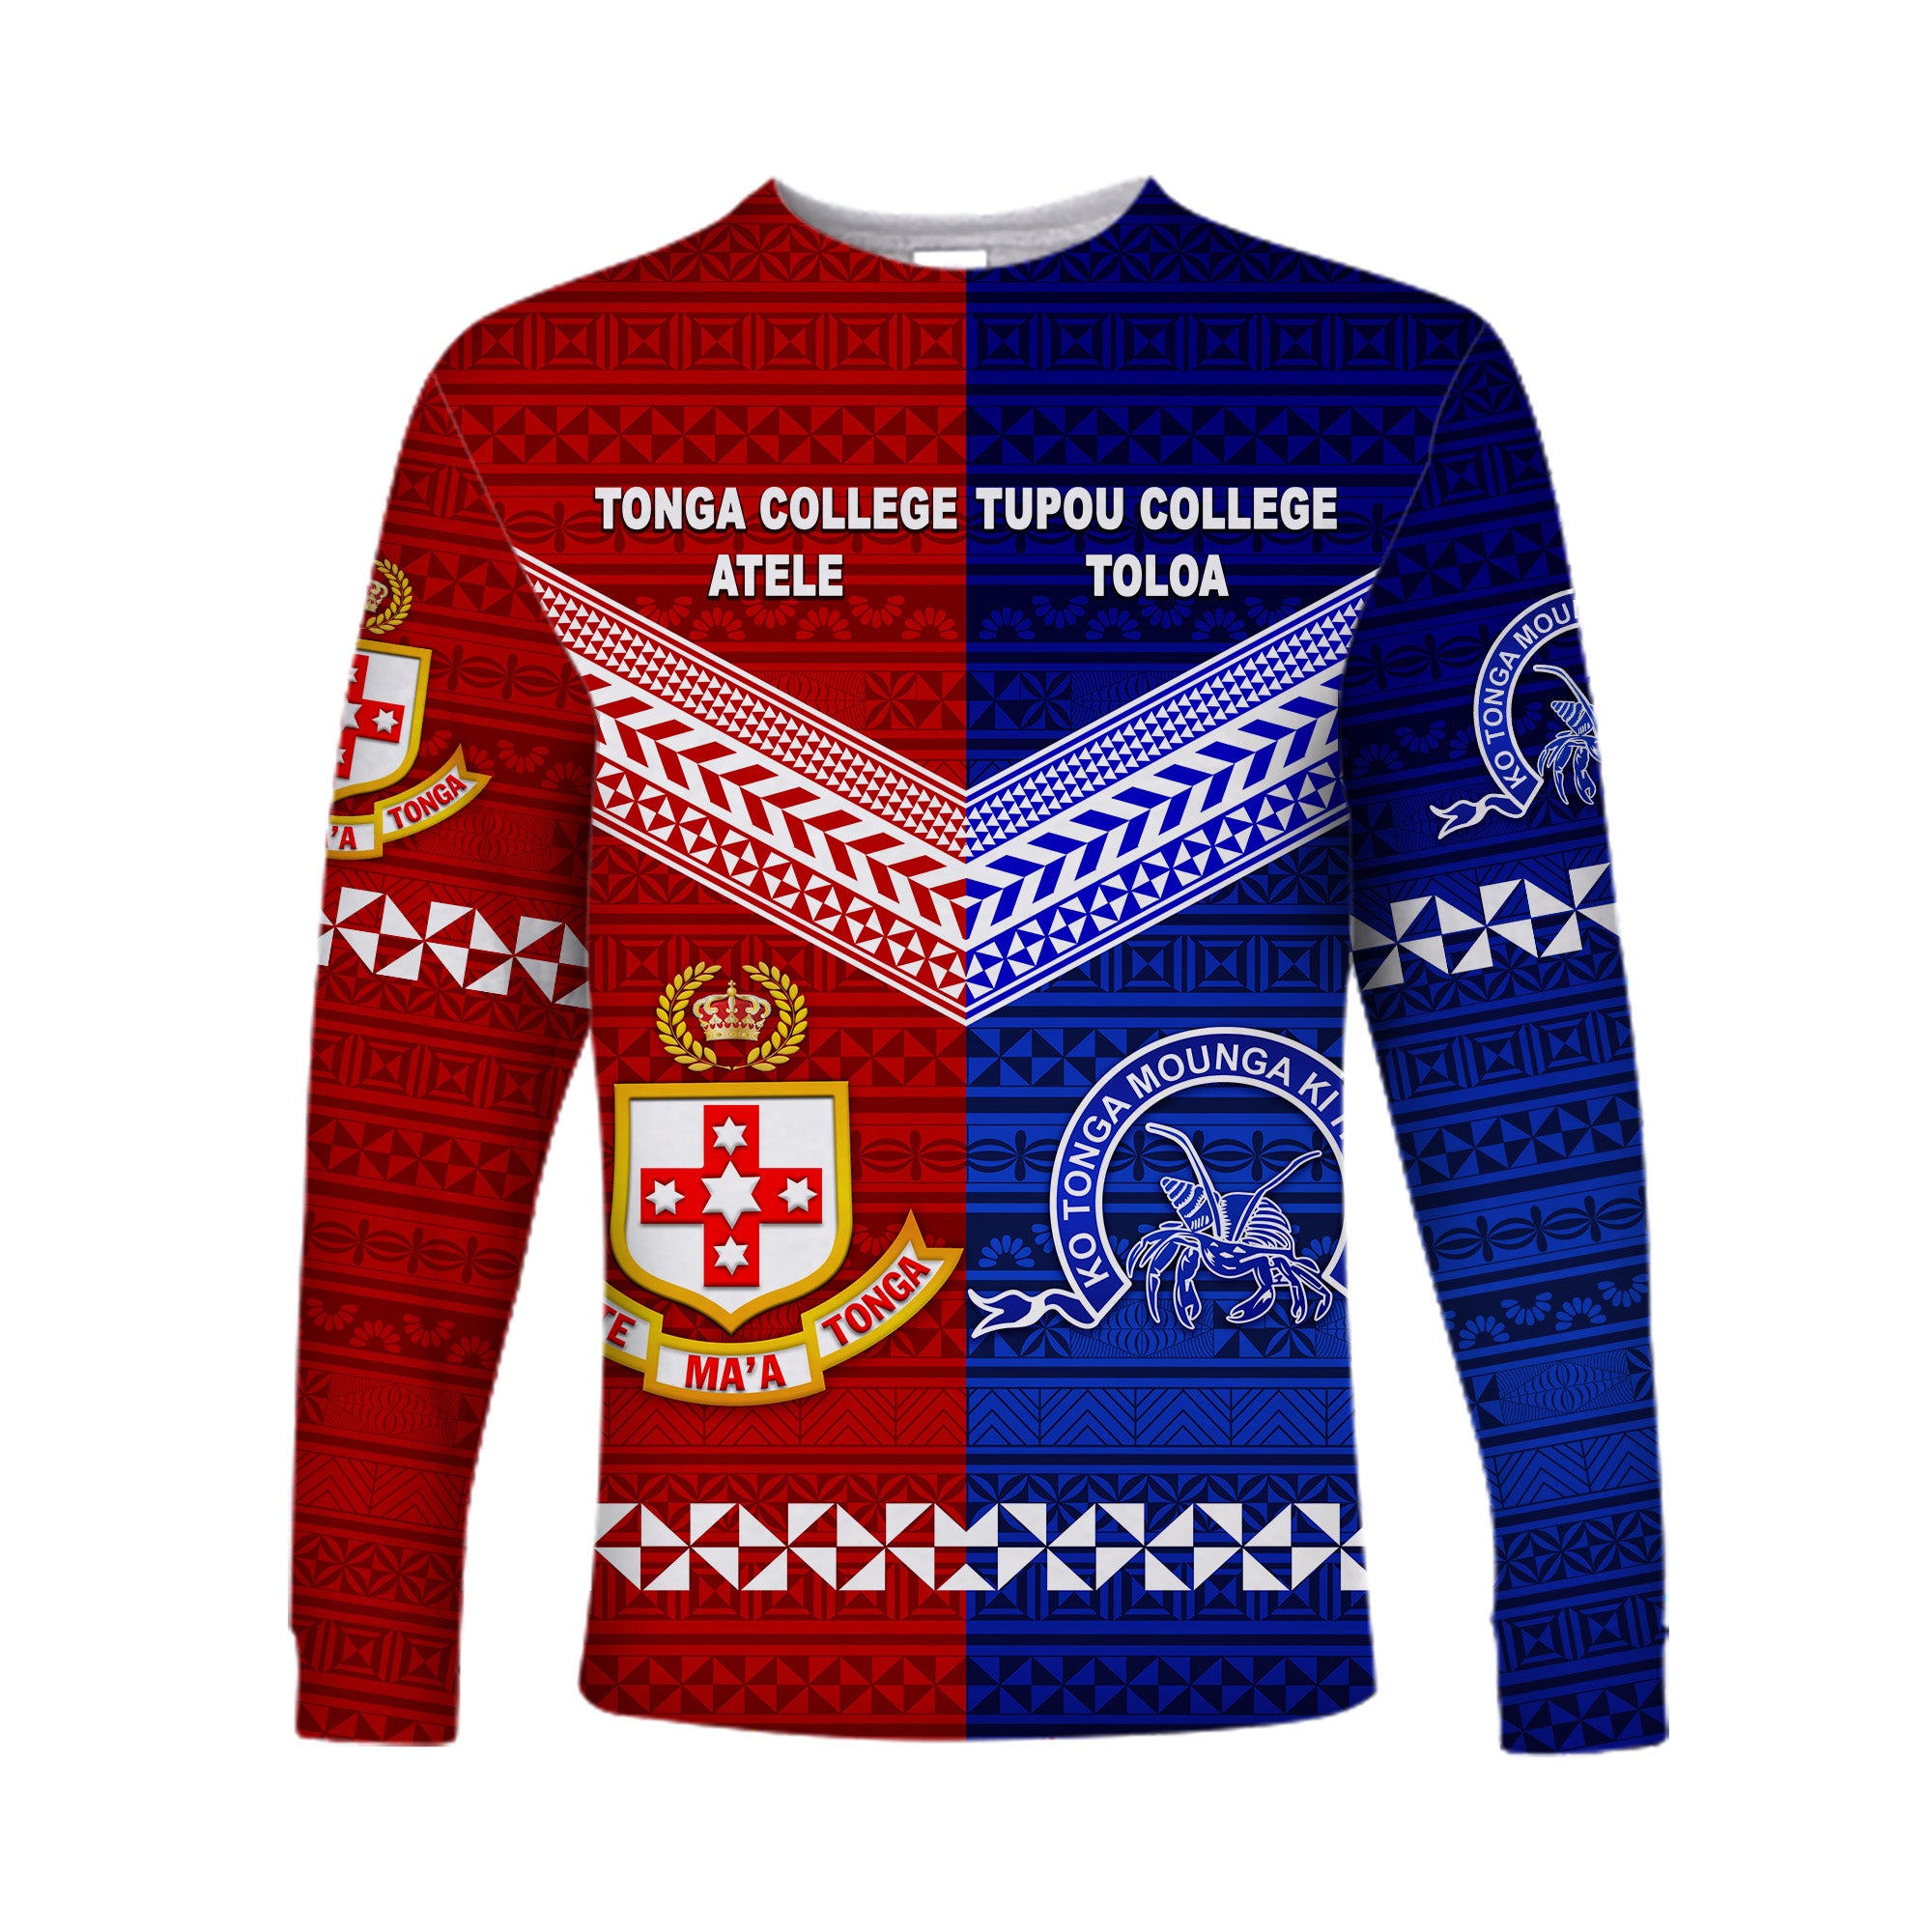 Kolisi Tonga College Atele And Tupou College Toloa Long Sleeve Shirt Together - Original LT8 Unisex Blue - Polynesian Pride